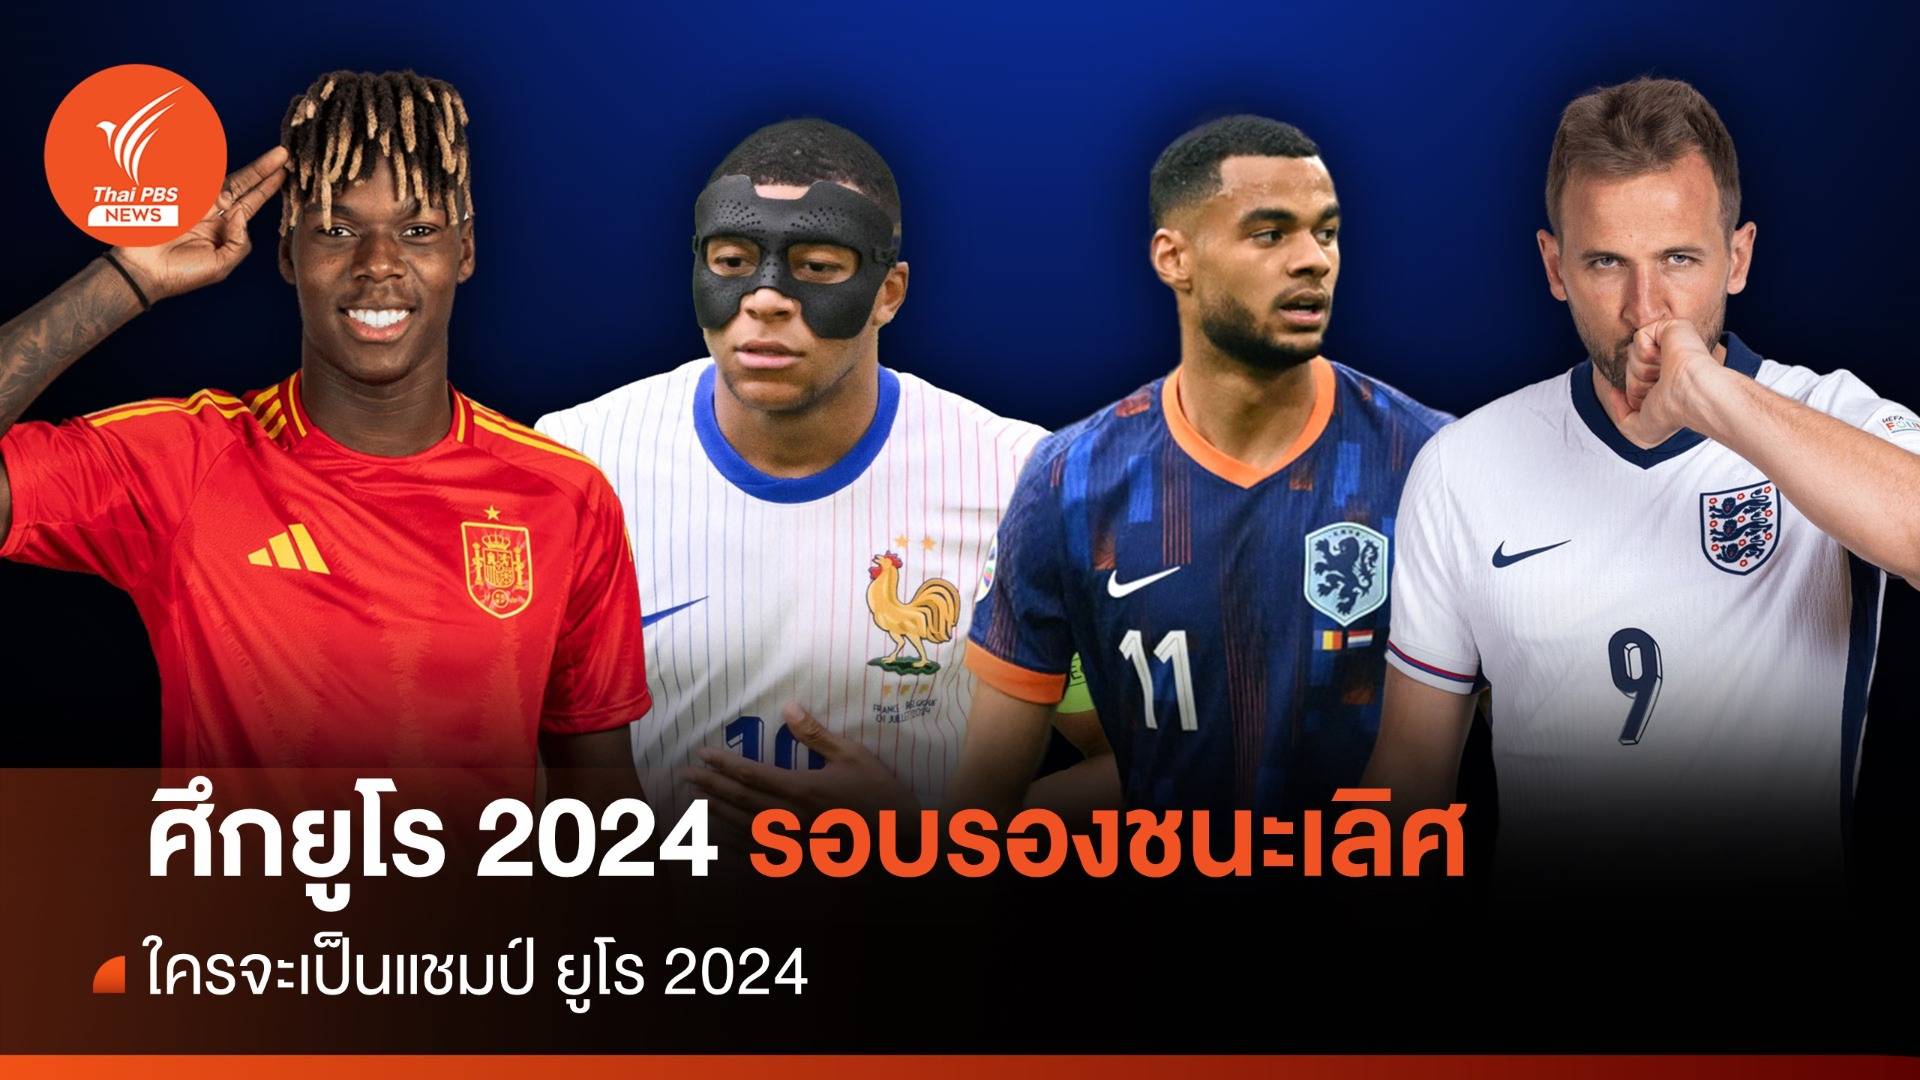 การแข่งขันฟุตบอลยูโร 2024  ได้ 4 ทีมสุดท้าย ใคร ? จะเป็นแชมป์ ยูโร 2024